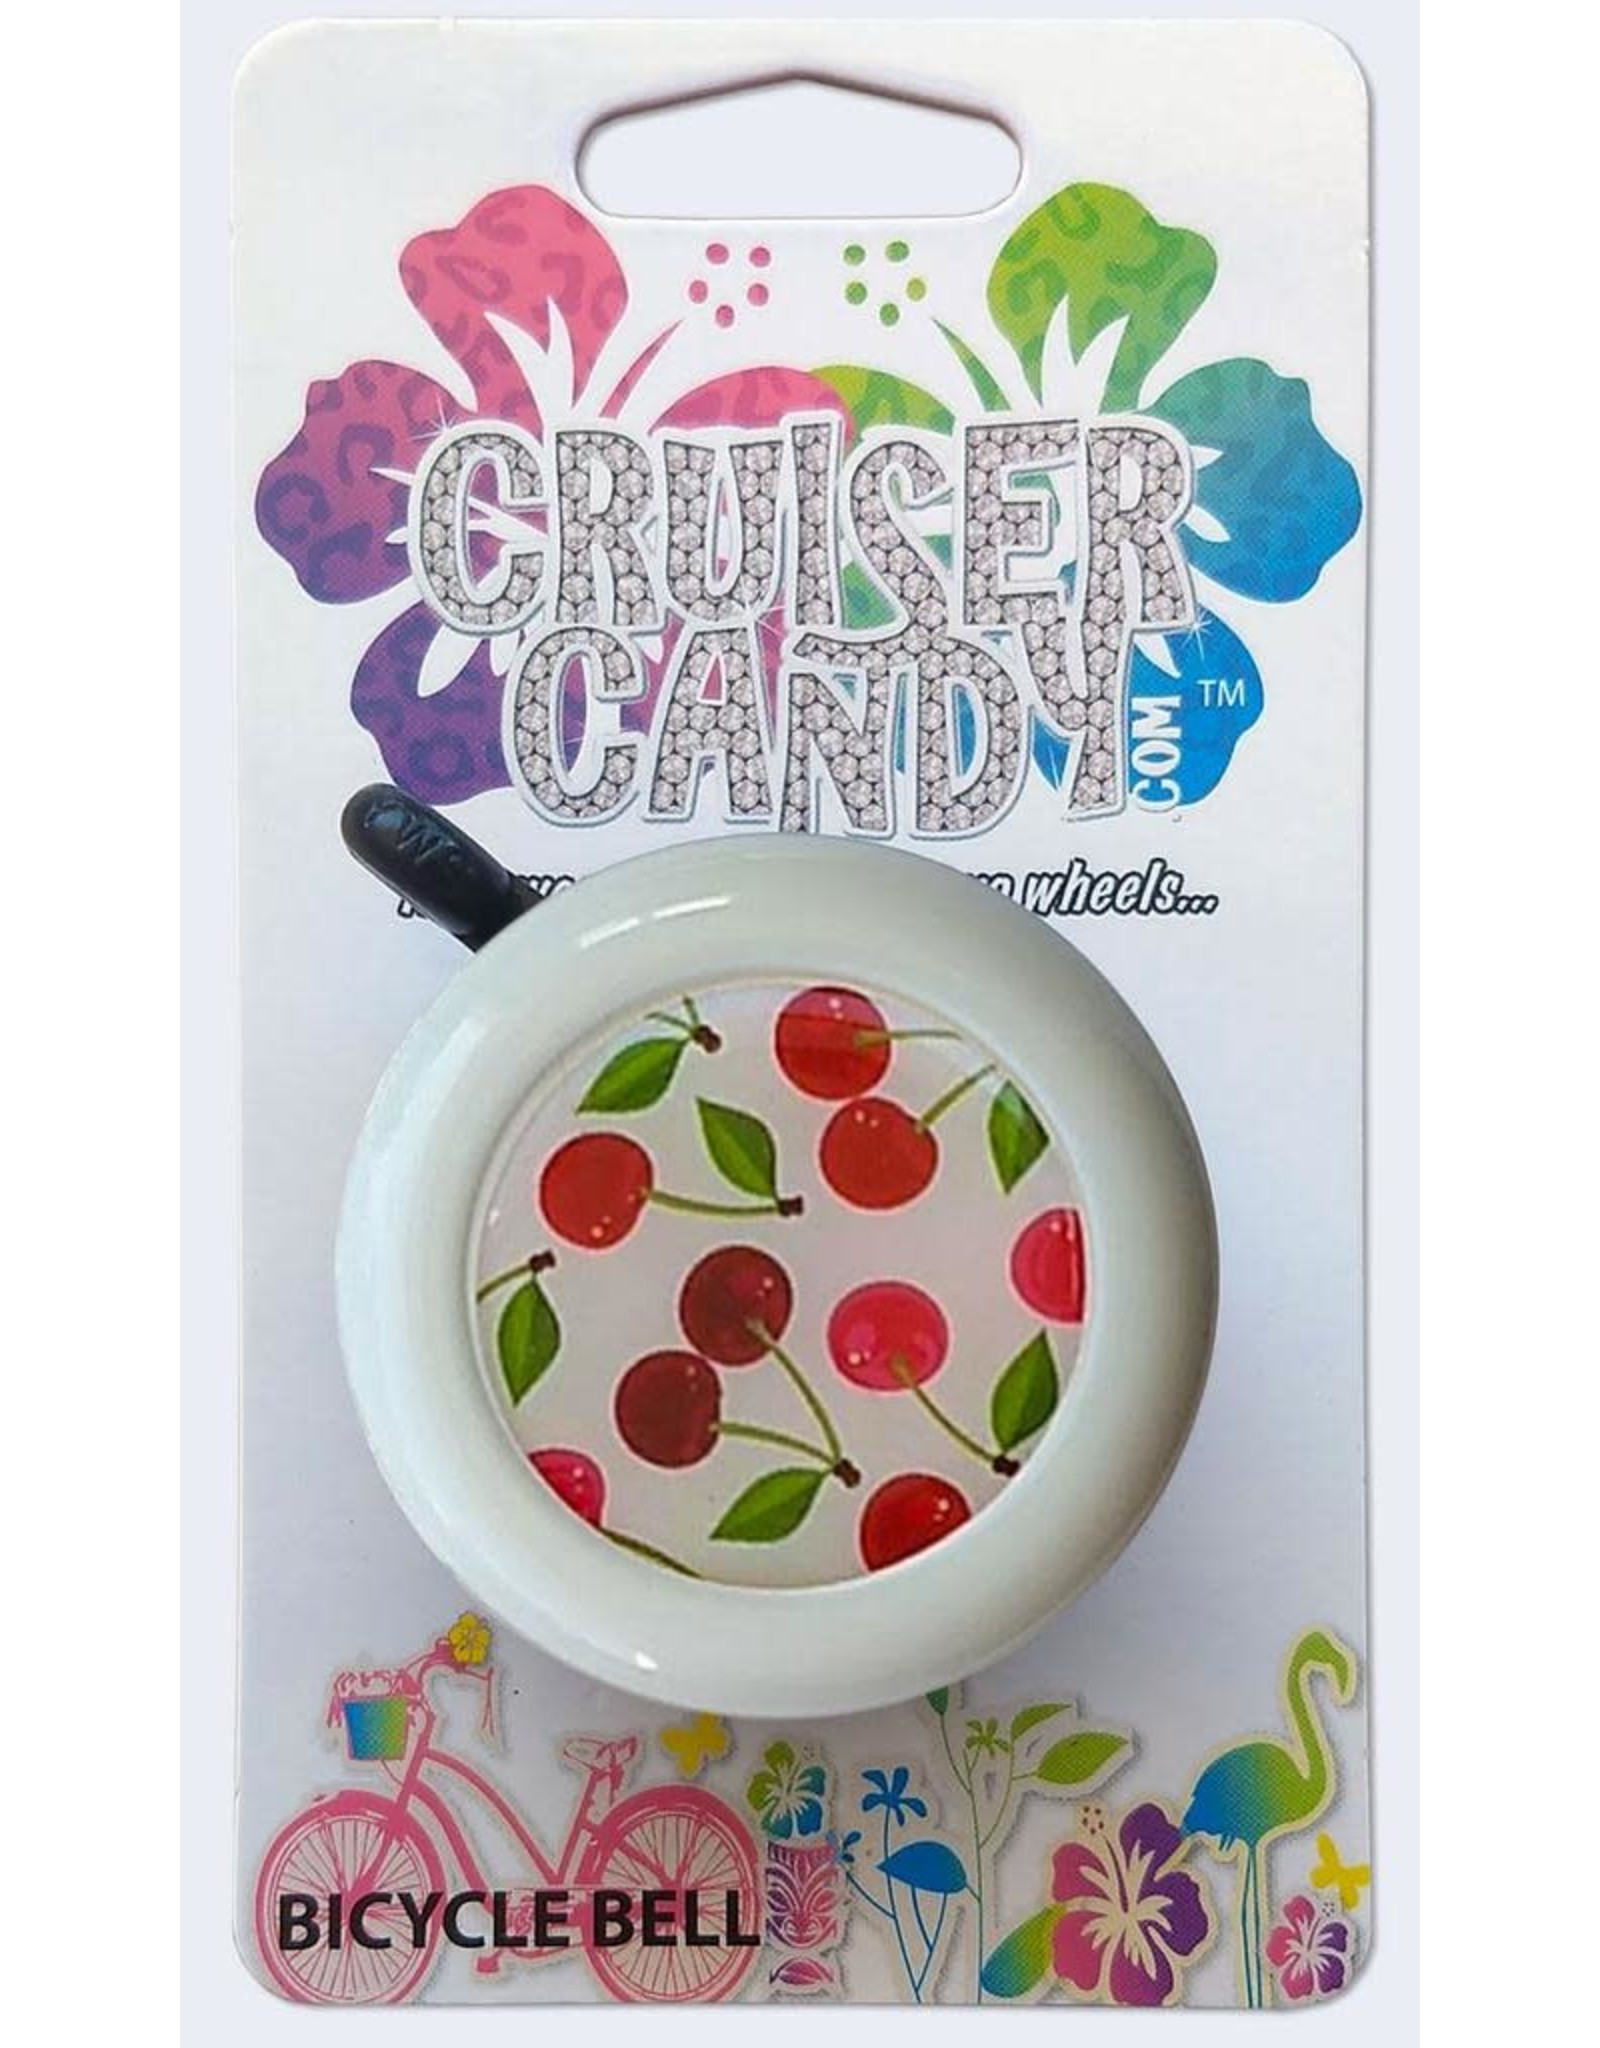 Cruiser Candy Cruiser Candy Bell  -